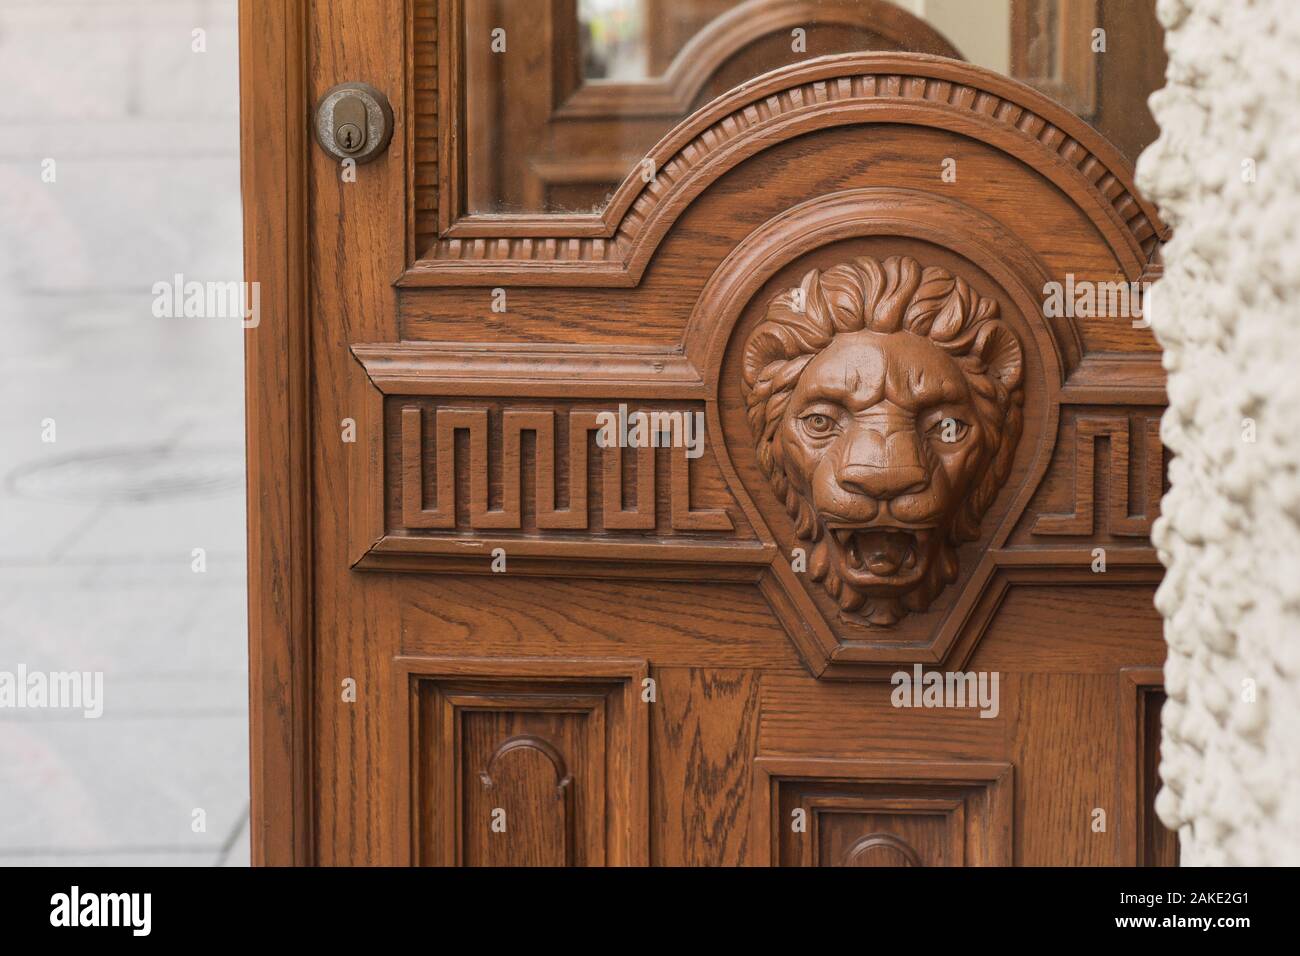 Big wooden head of lion on the front door. Stock Photo